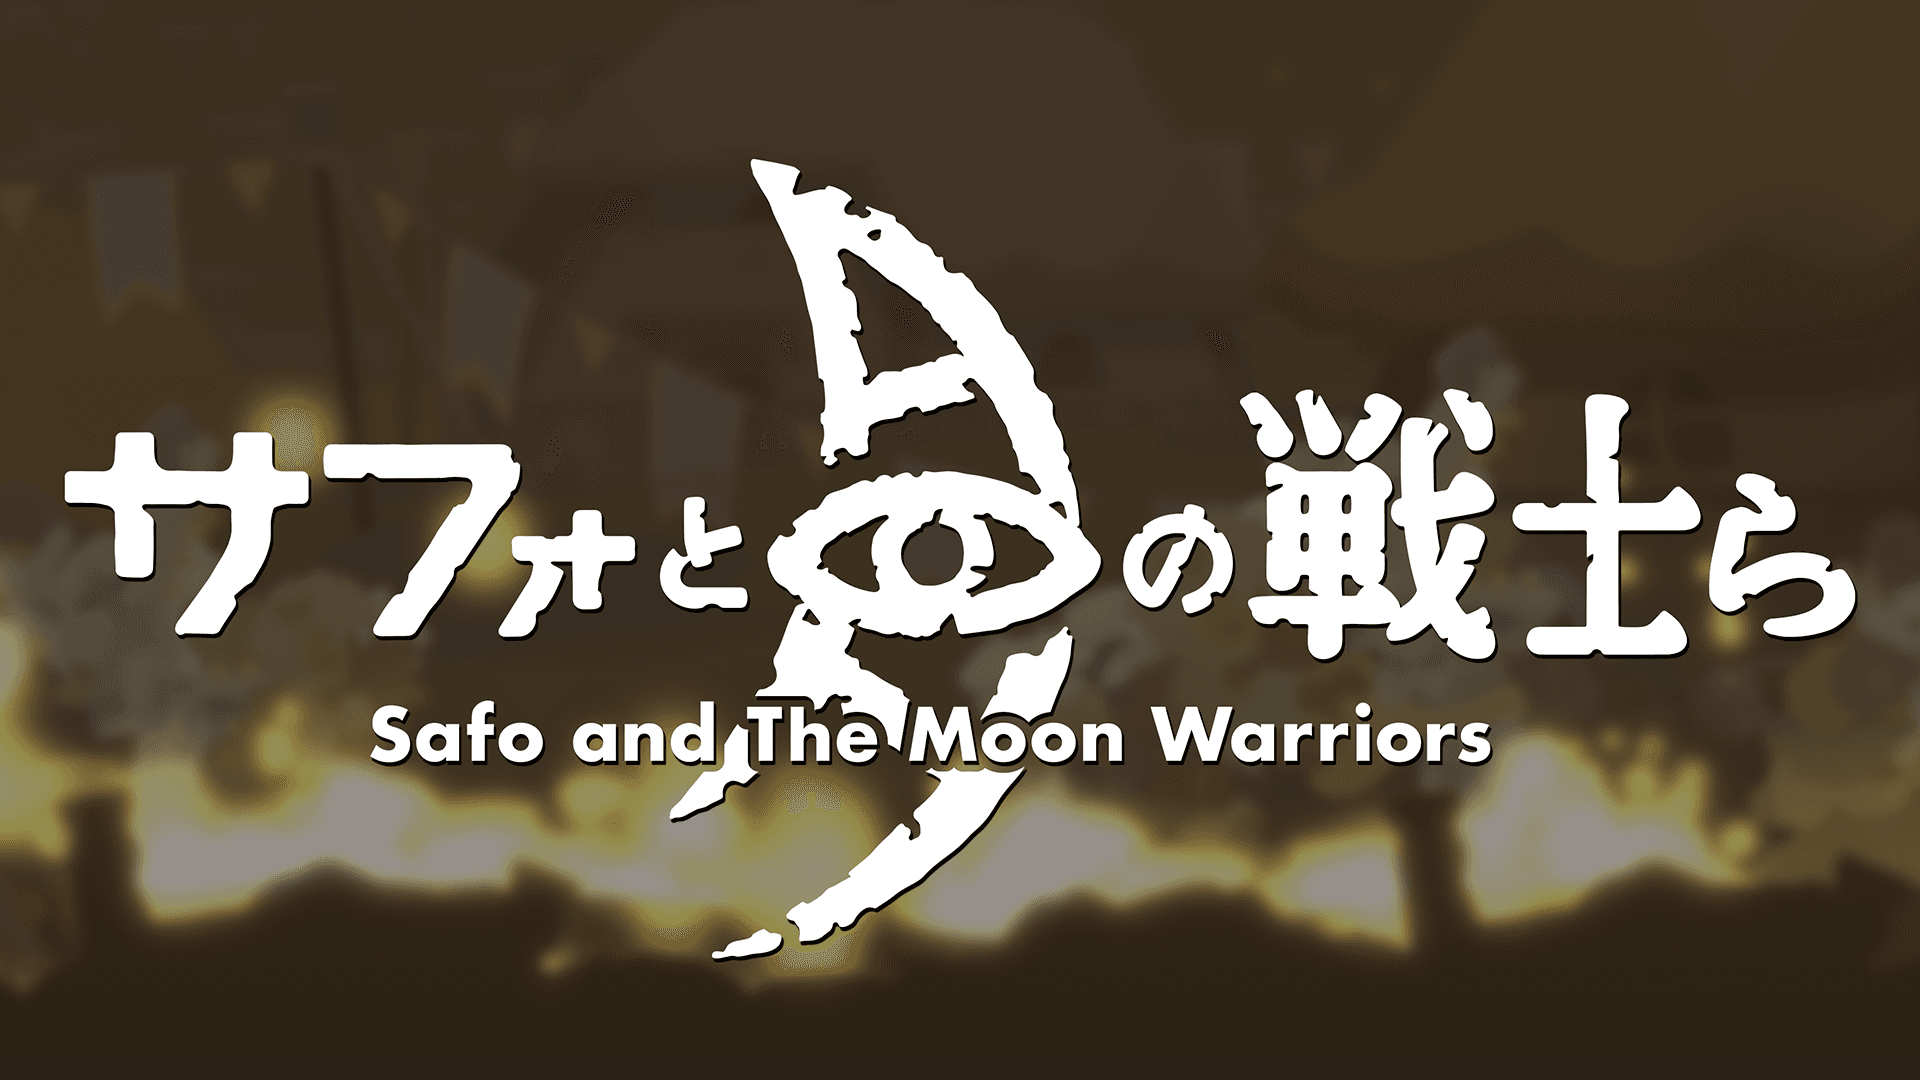 Safo and the Moon Warriors annunciato per PC e Switch 